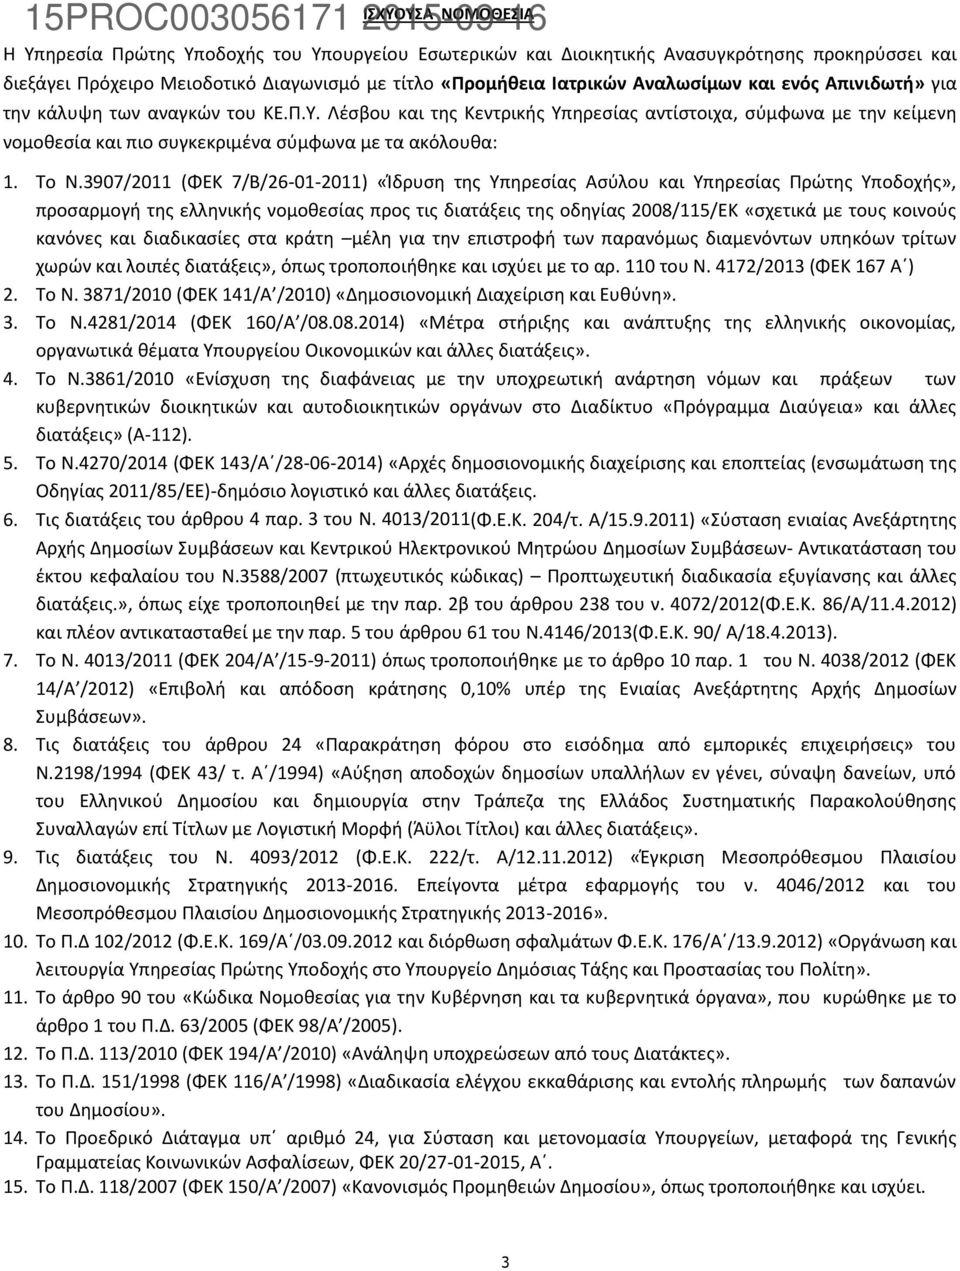 3907/2011 (ΦΕΚ 7/Β/26-01-2011) «Ίδρυση της Υπηρεσίας Ασύλου και Υπηρεσίας Πρώτης Υποδοχής», προσαρμογή της ελληνικής νομοθεσίας προς τις διατάξεις της οδηγίας 2008/115/ΕΚ «σχετικά με τους κοινούς